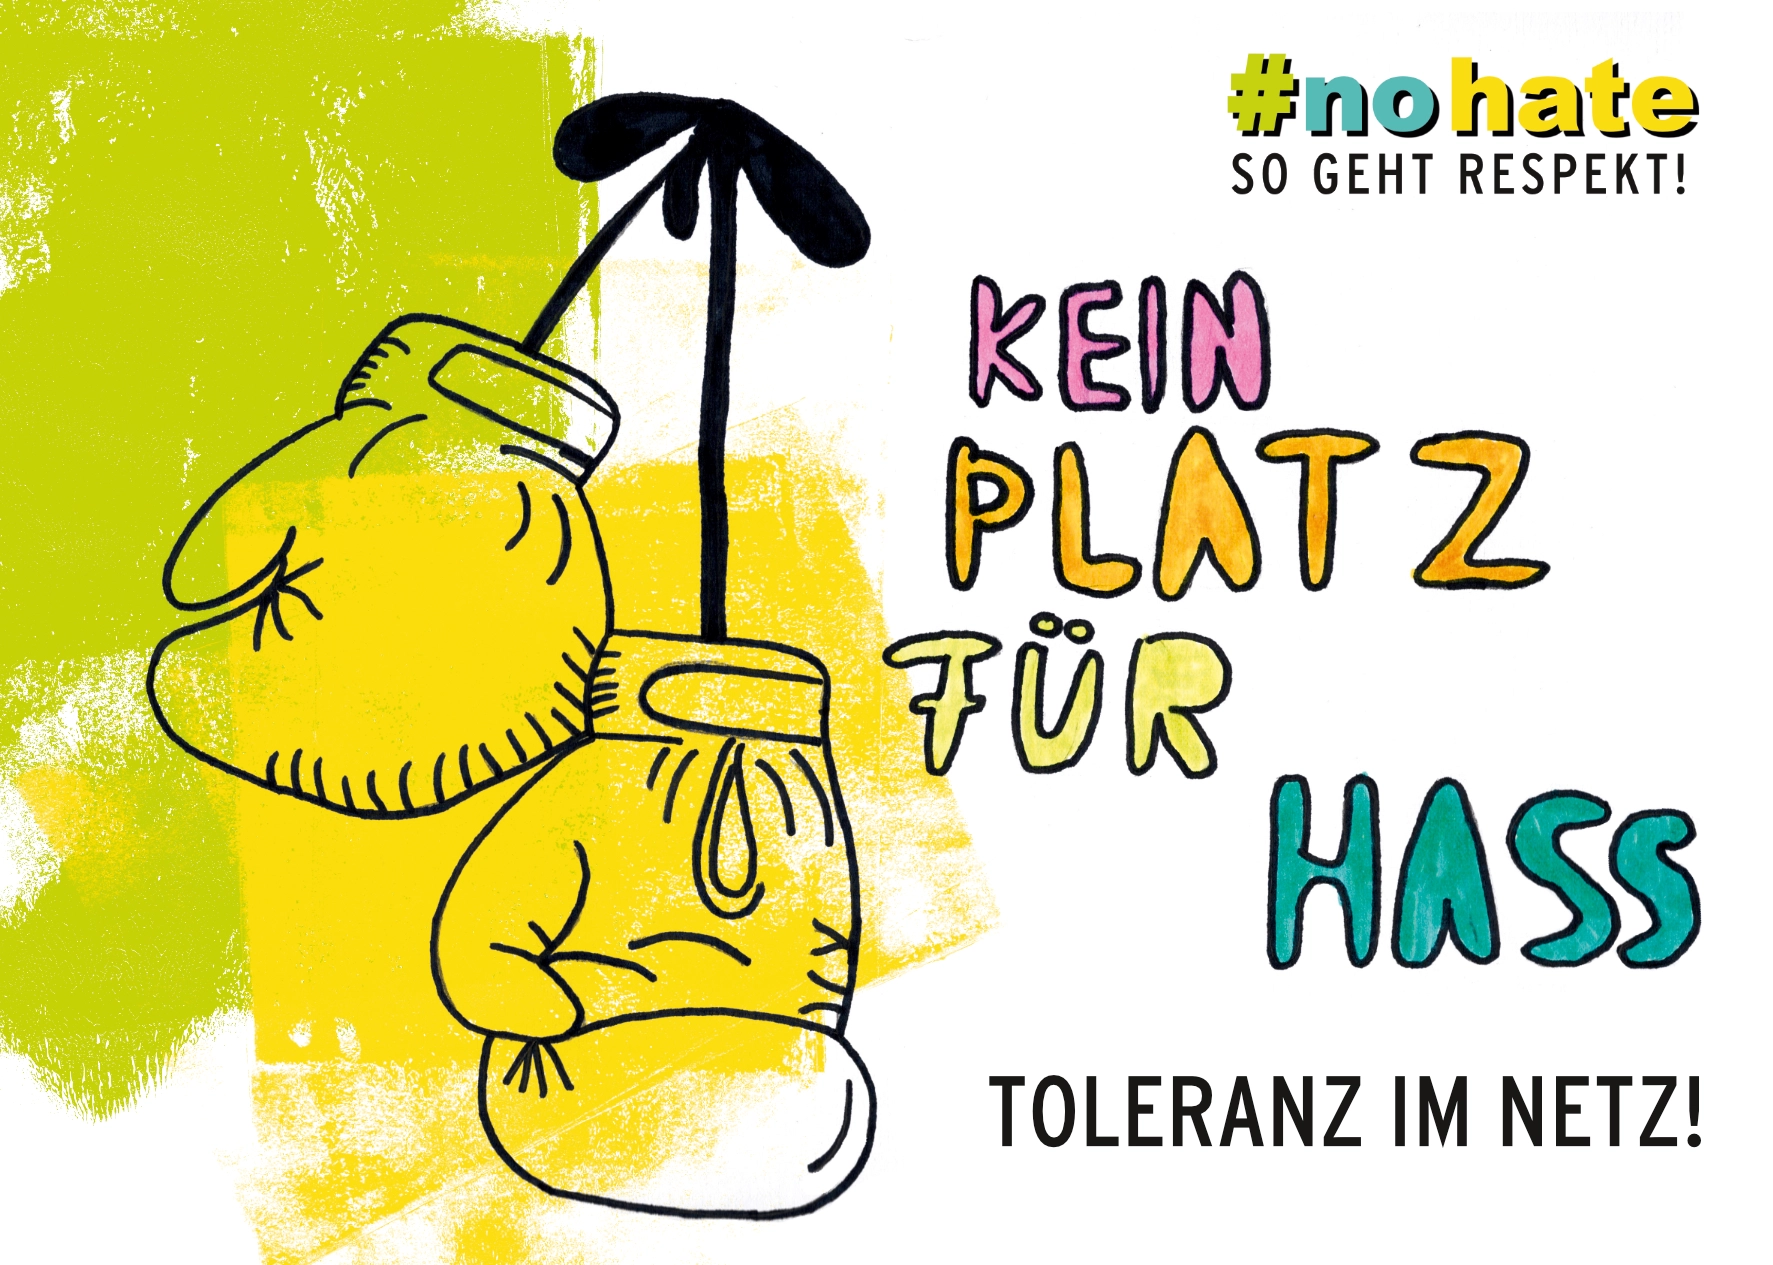 Postkarten- und Stickermotiv "Kein Platz für Hass. Toleranz im Netz!"